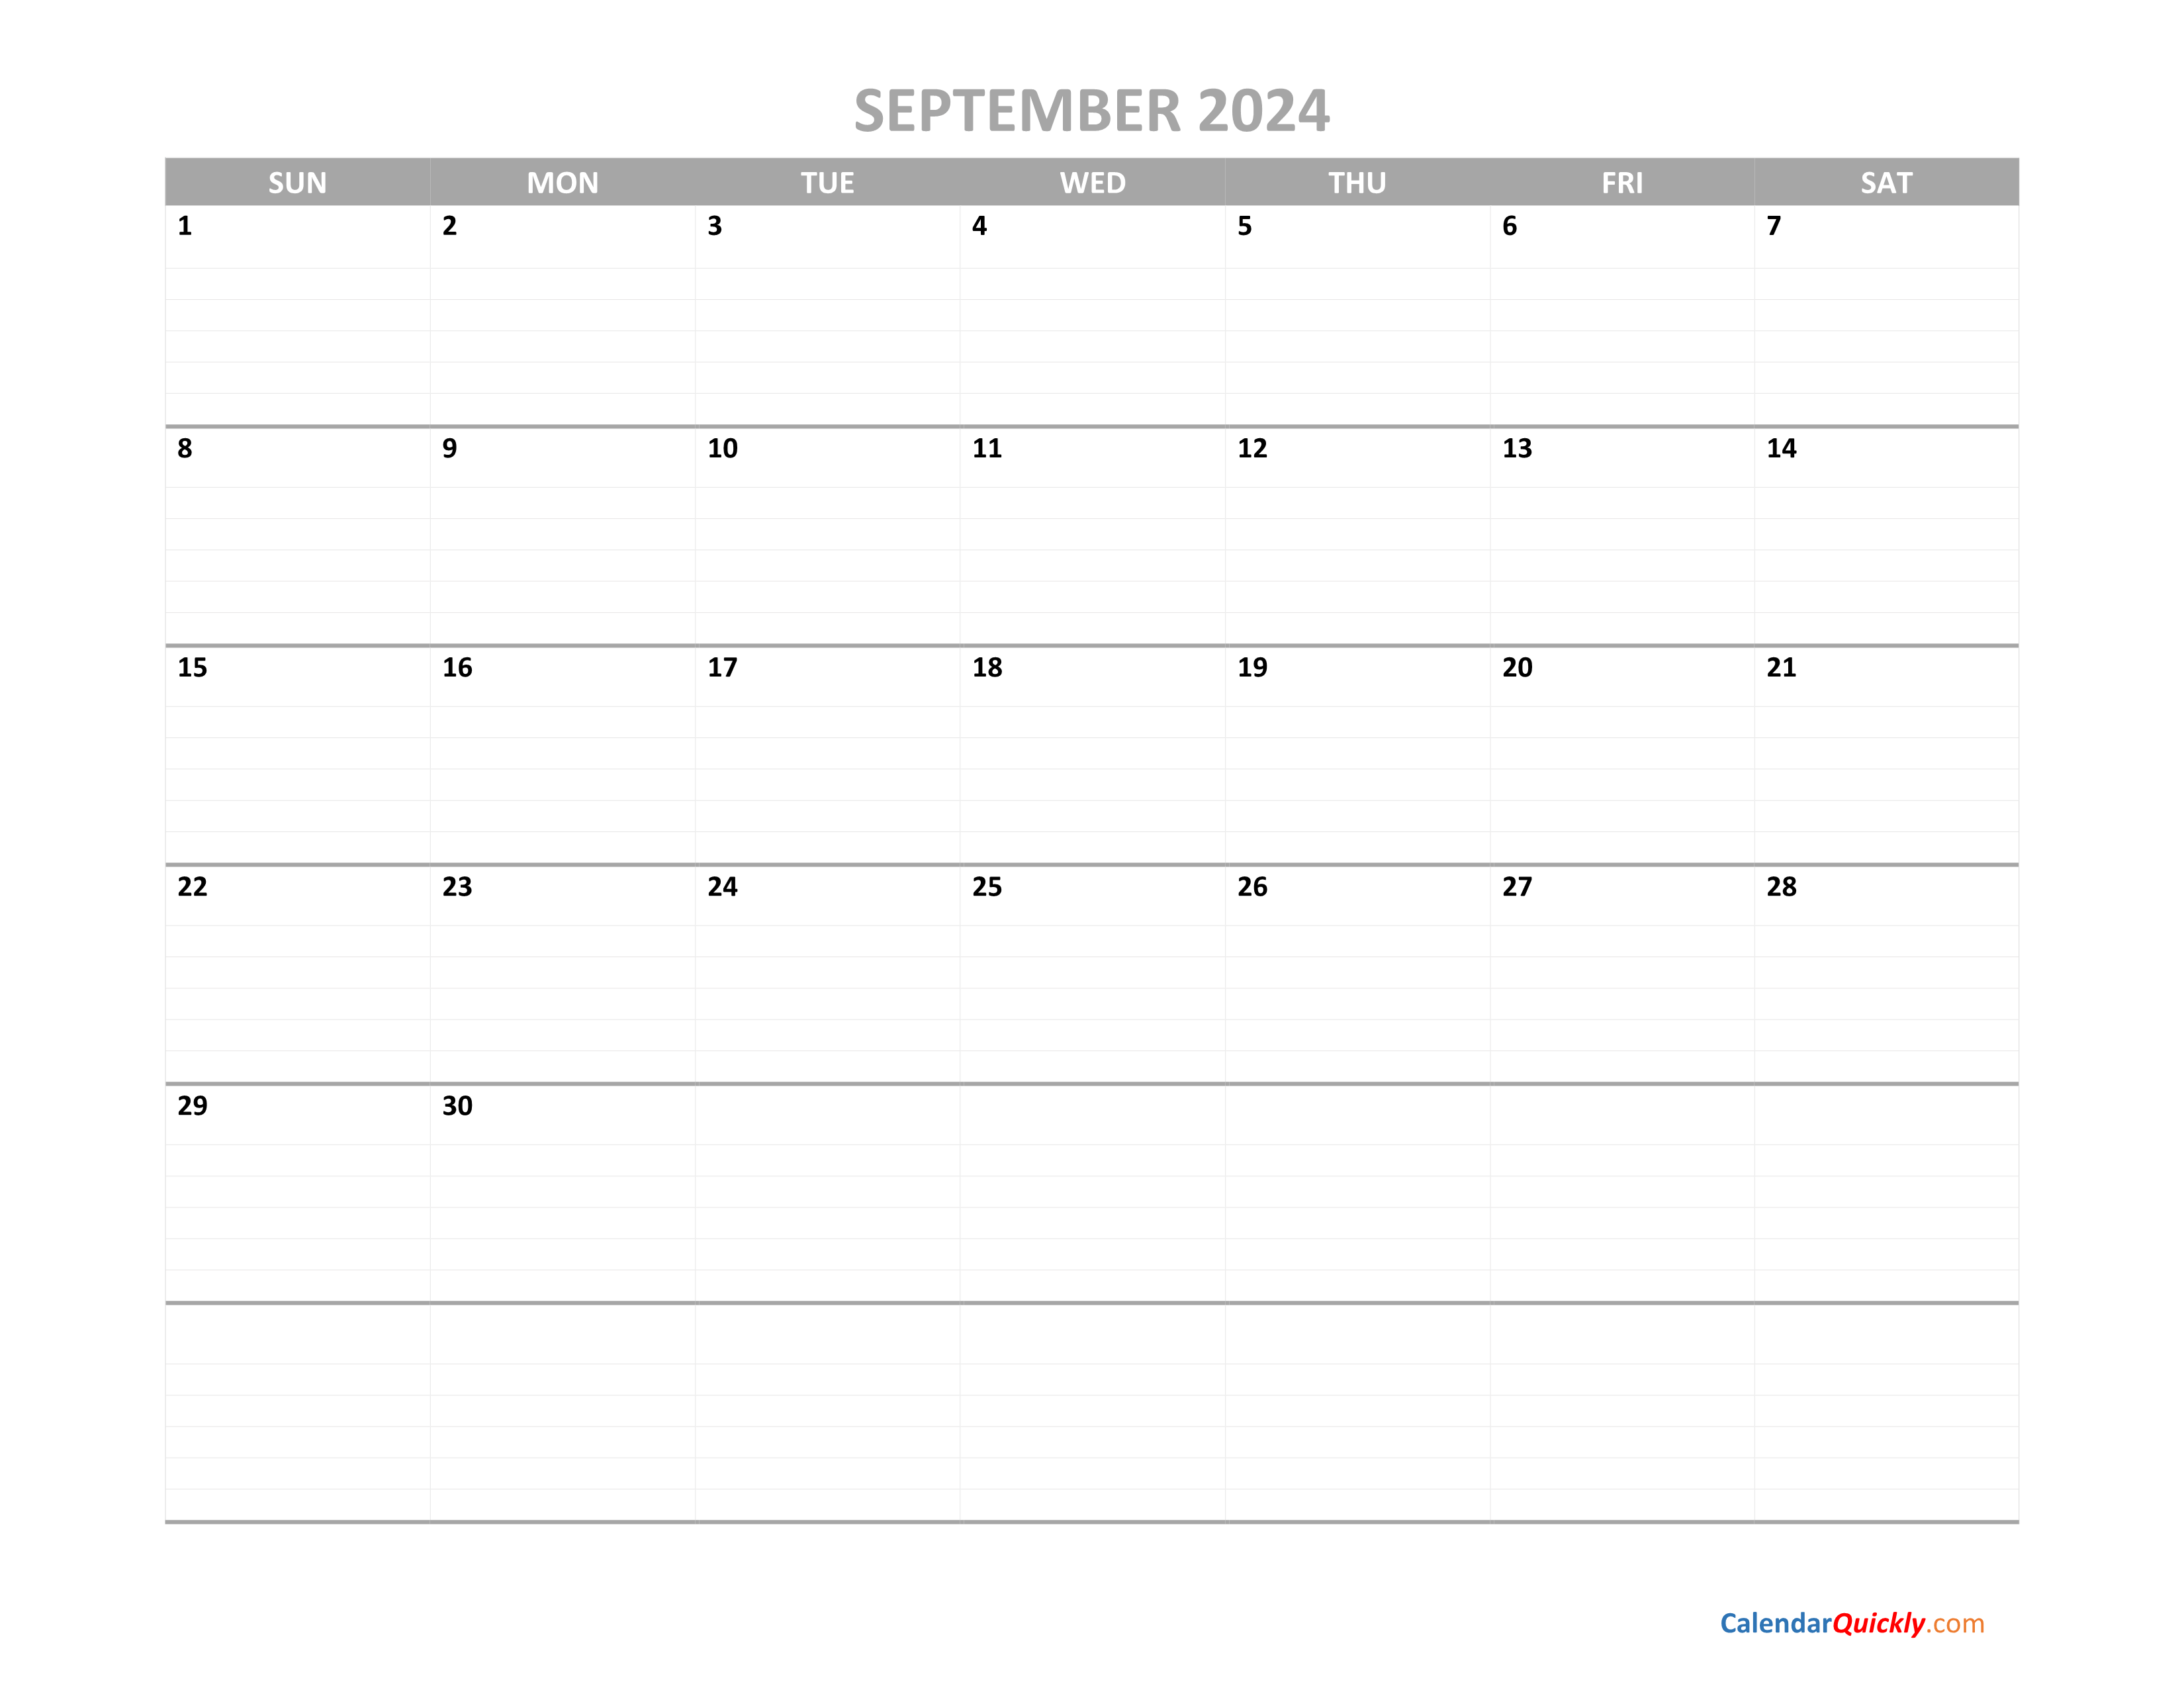 September Calendar 2024 Printable | Calendar Quickly